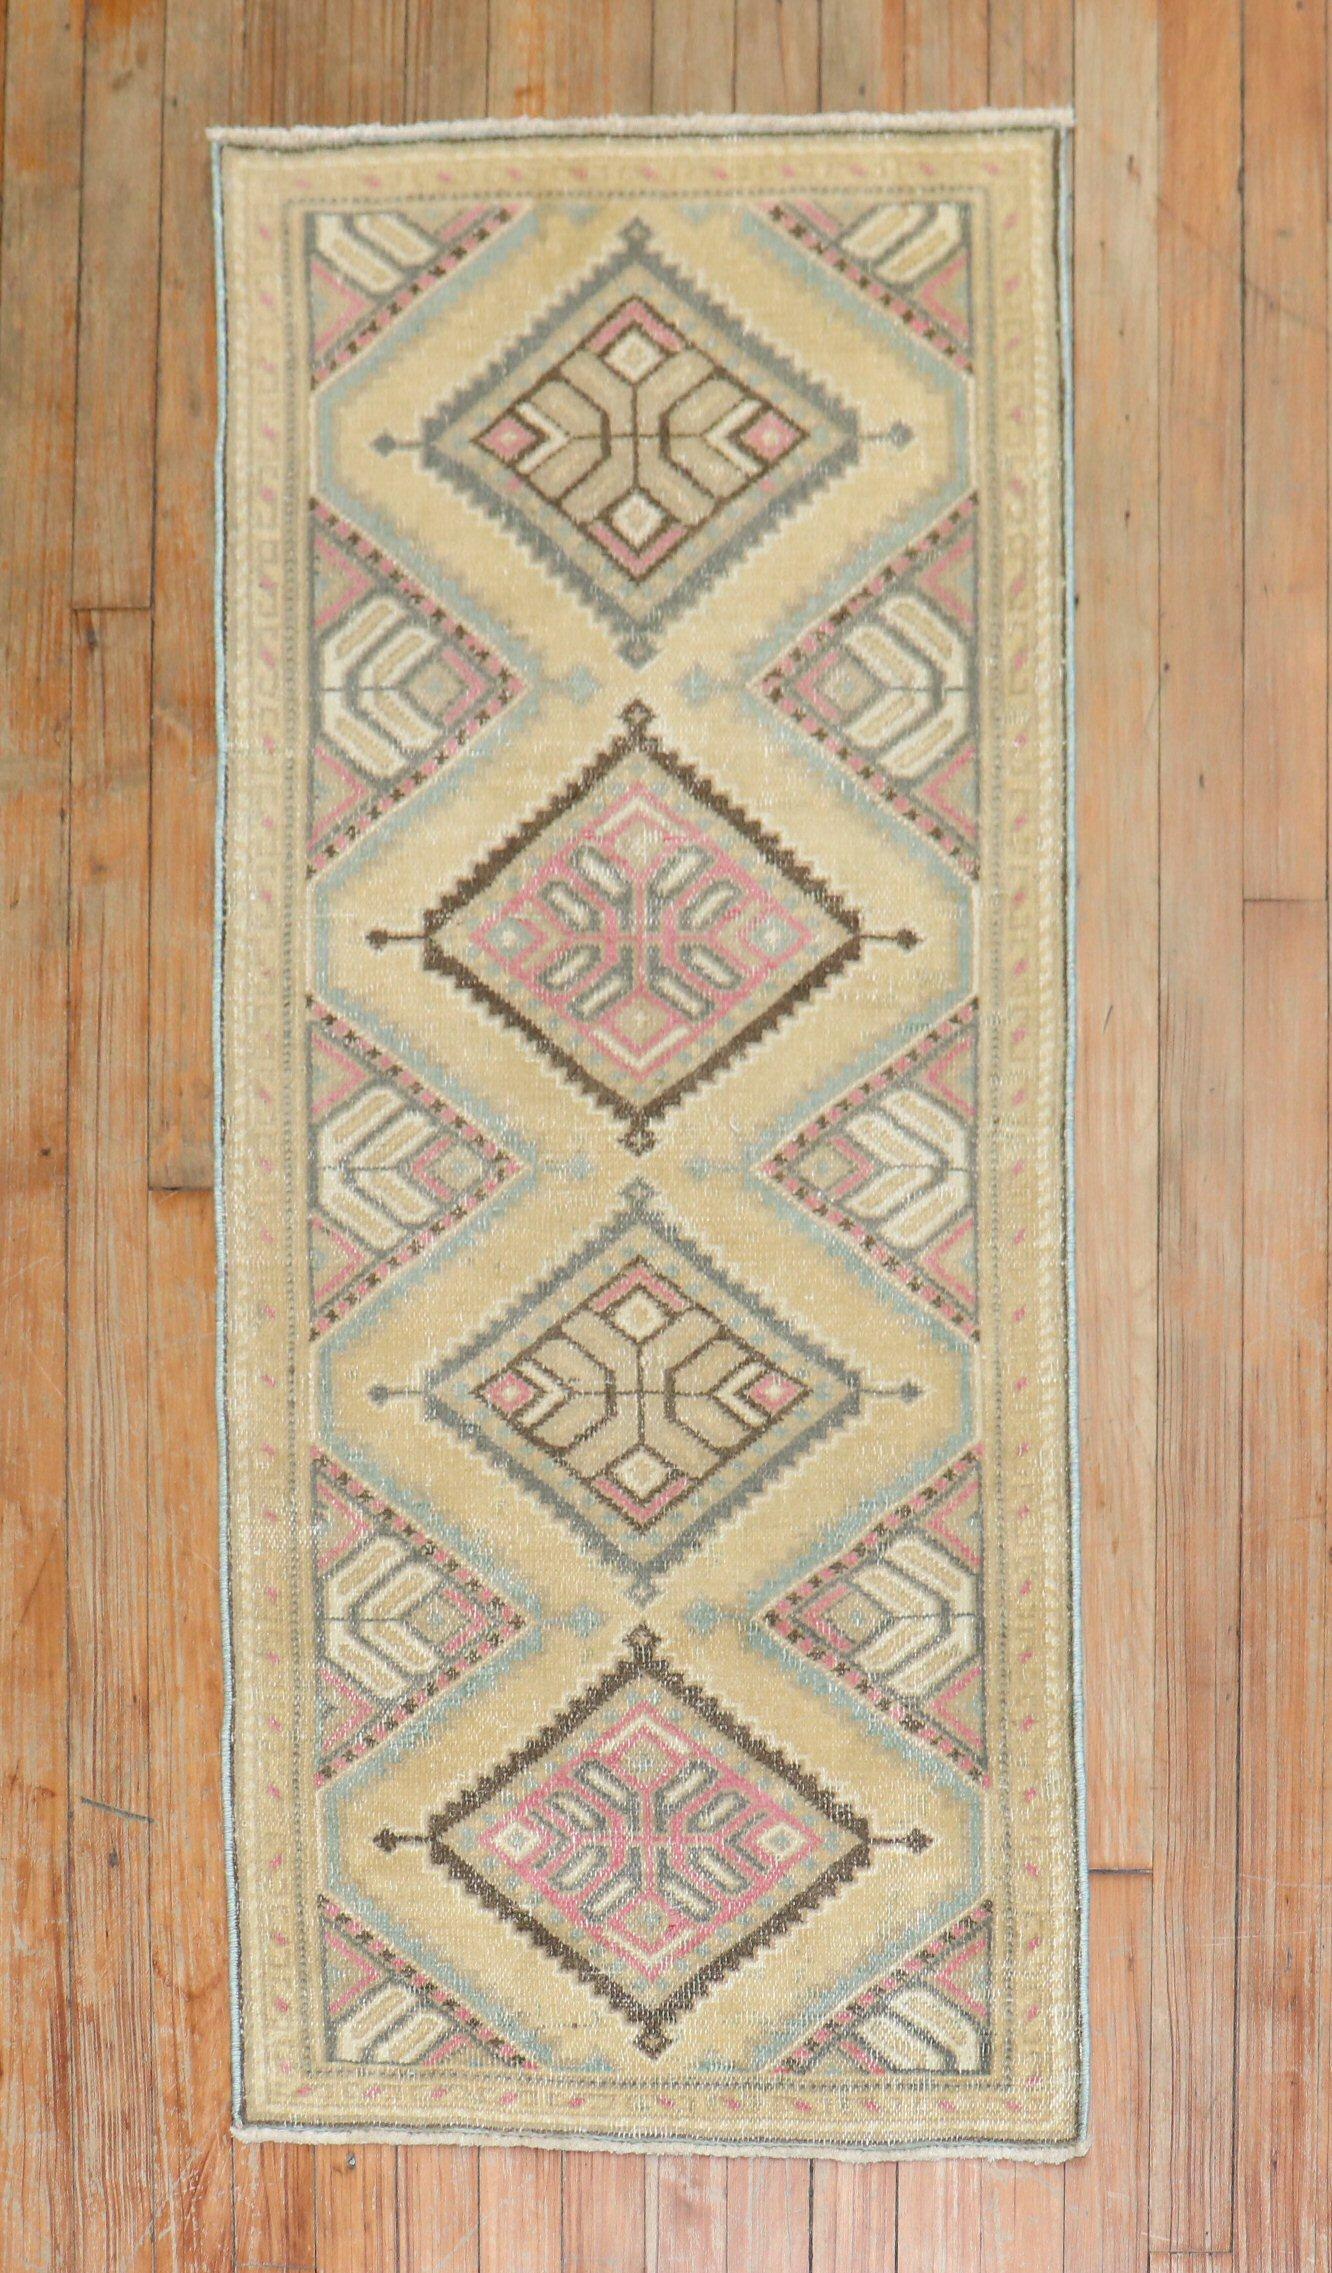 Perserteppich aus der Mitte des 20. Jahrhunderts mit einem hübschen geometrischen Muster.

Maße: 2' x 4'2''.